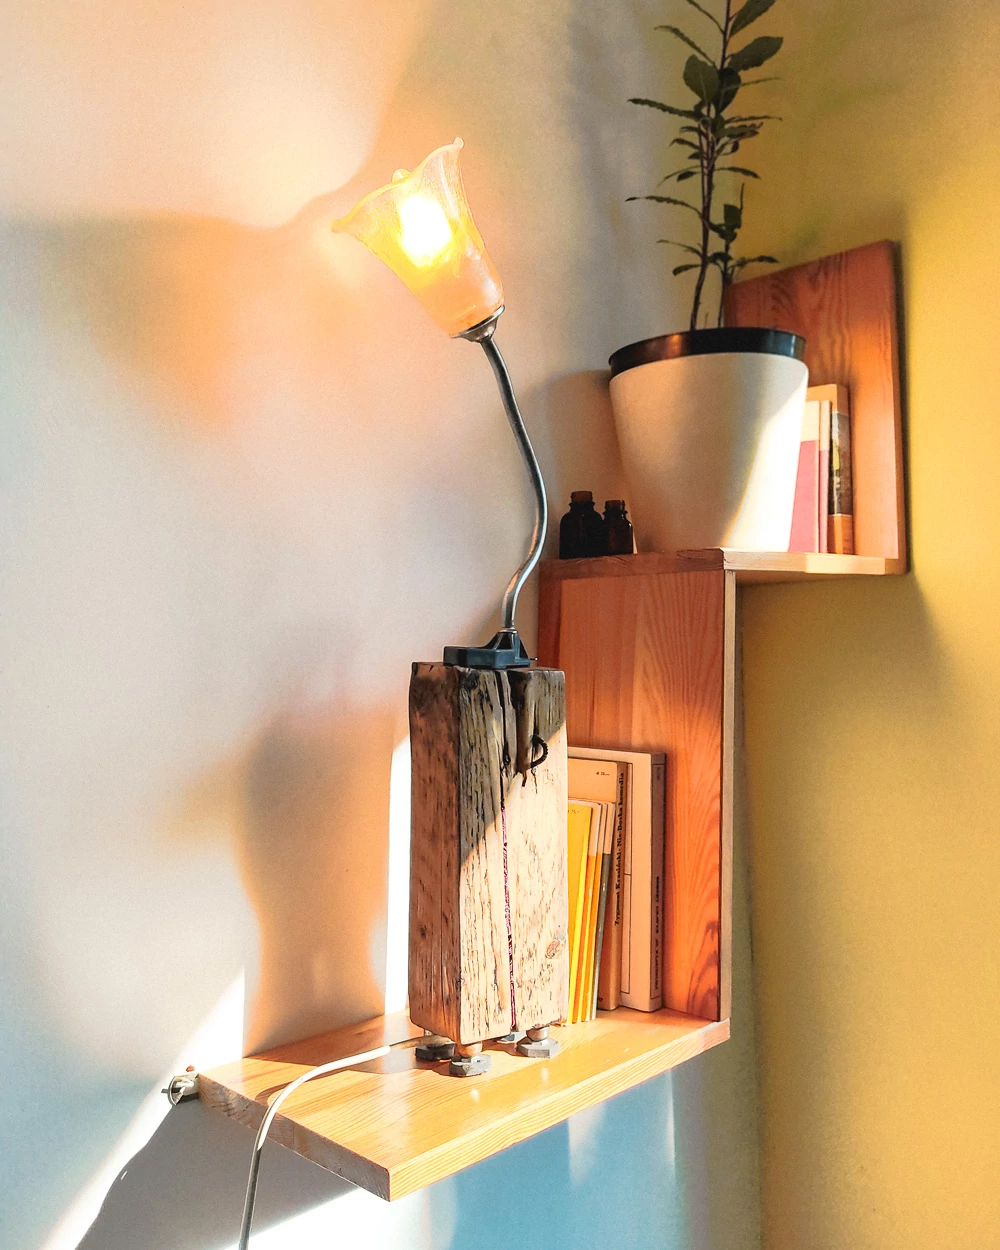 Zdjęcie Lampy "Lampofon" w świetle poranka.